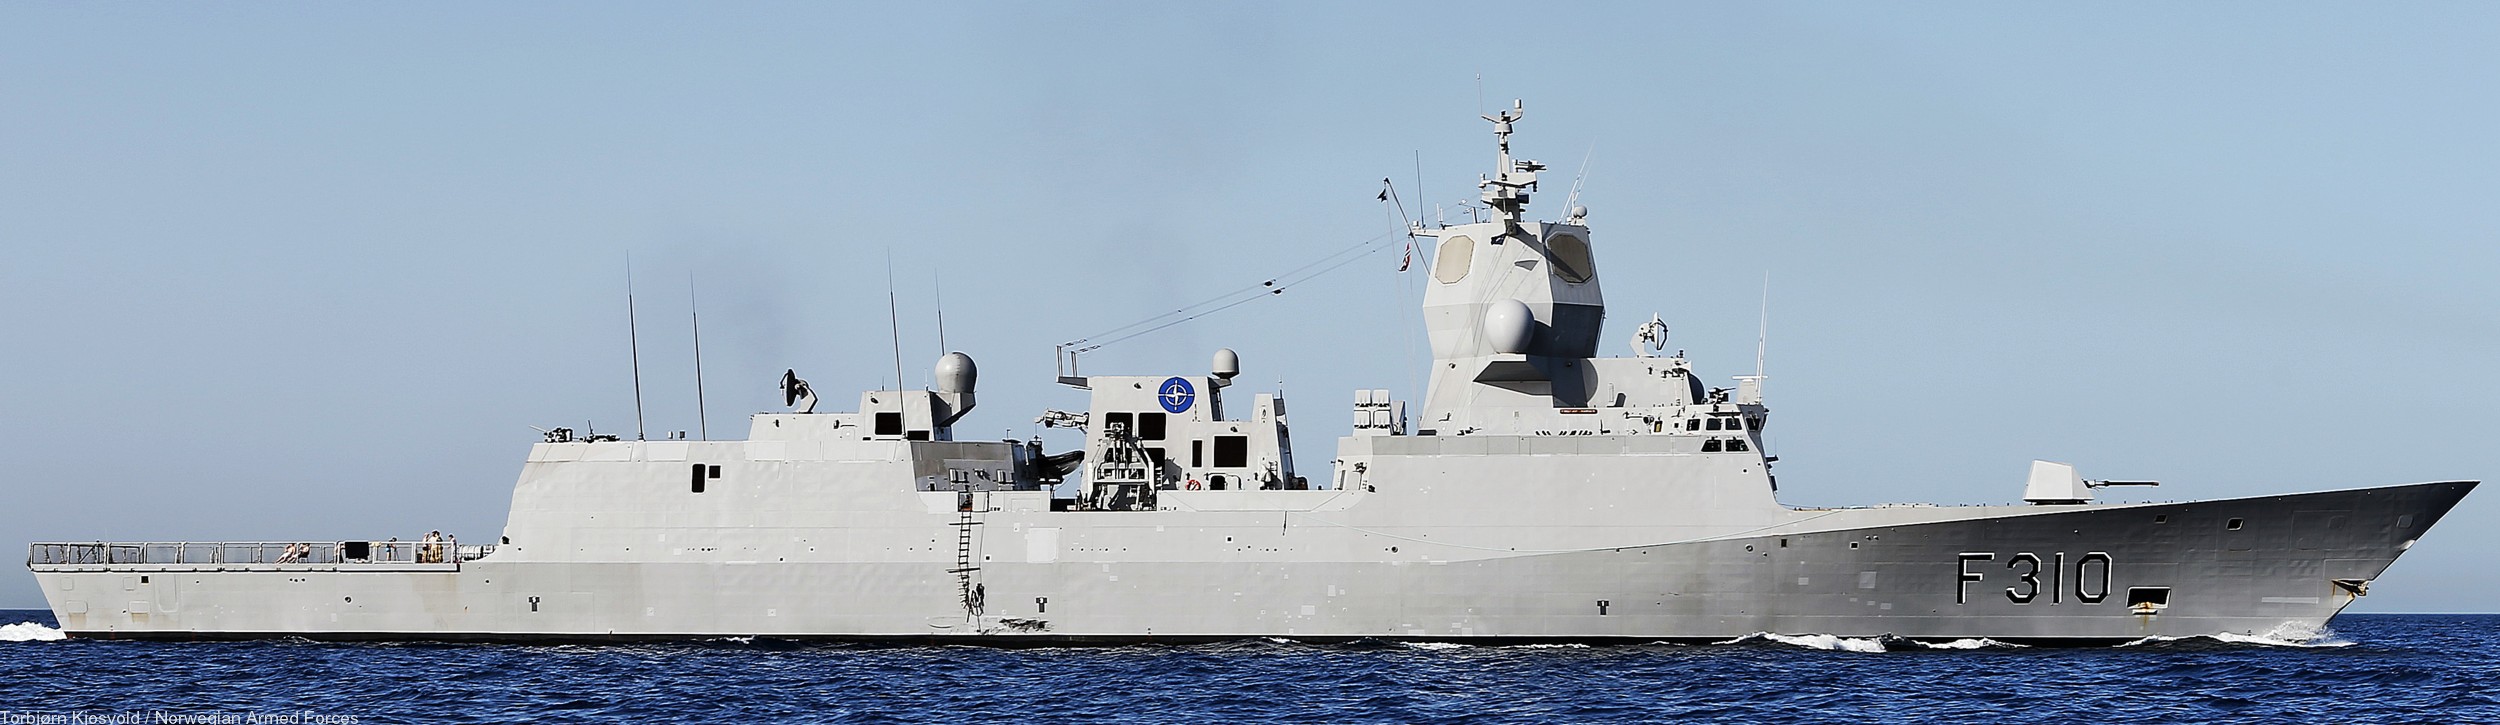 f-310 fridtjof nansen hnoms knm frigate royal norwegian navy sjoforsvaret 33